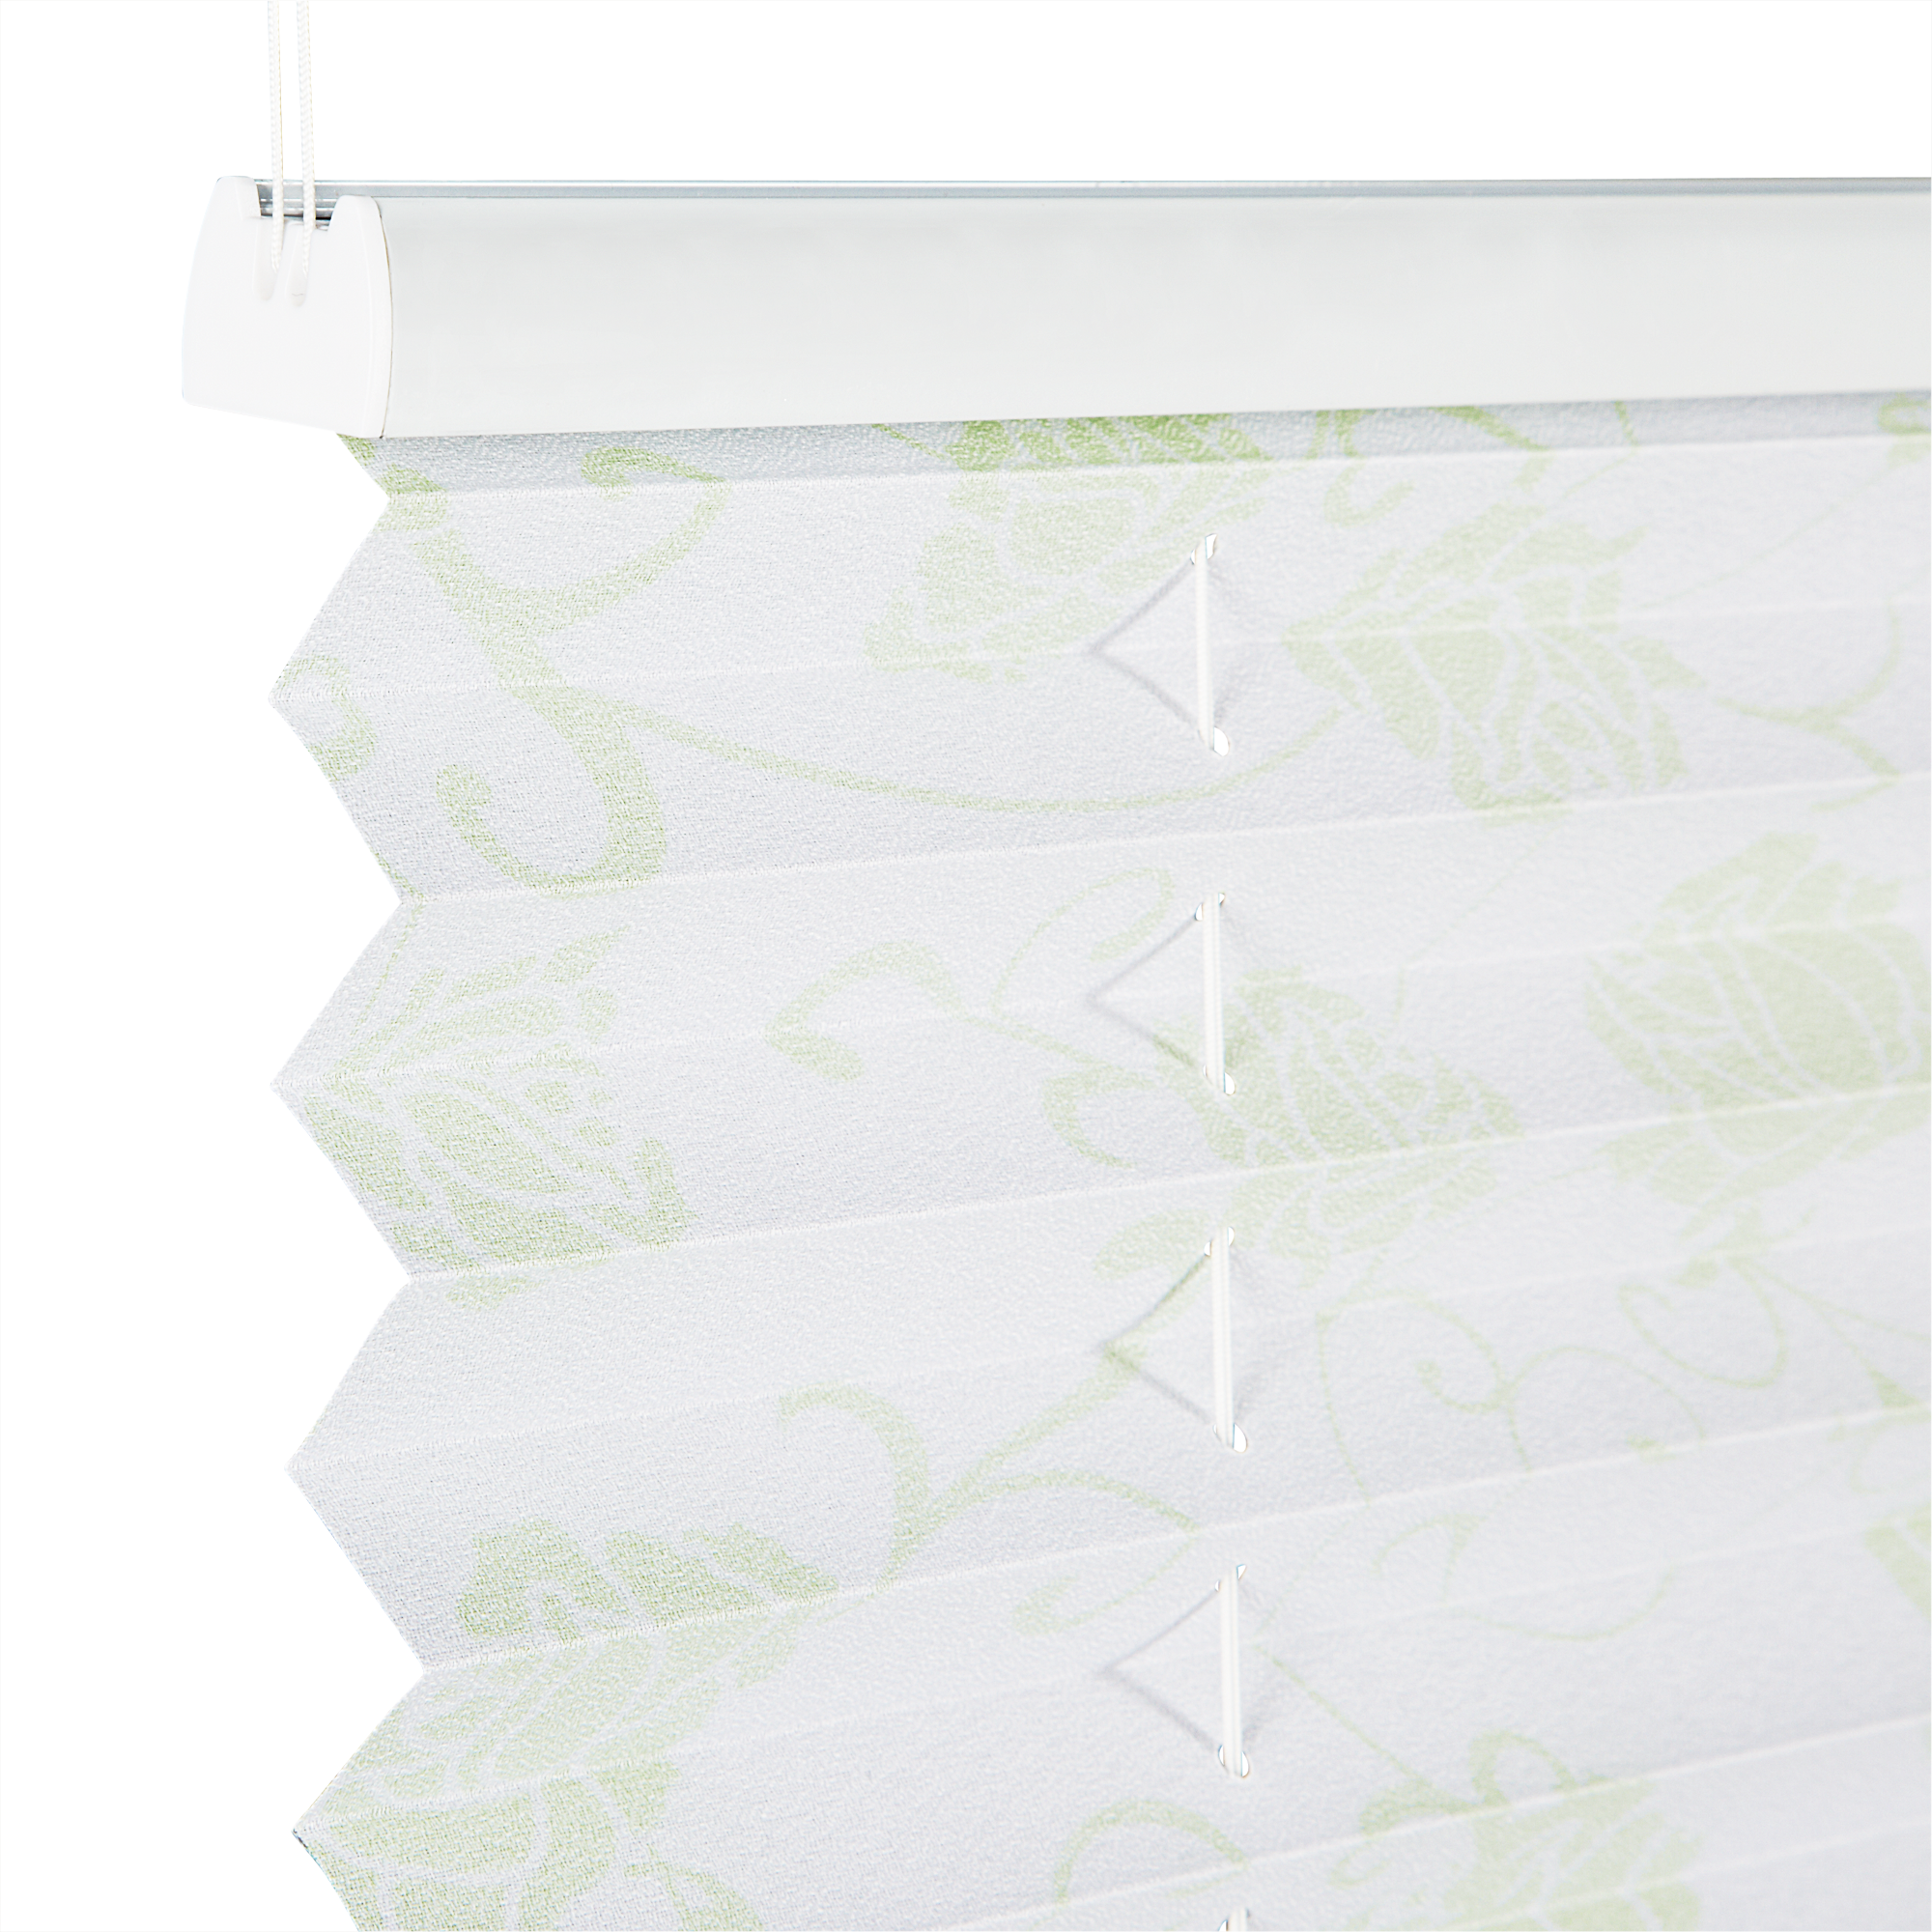 Tageslichtplissee 'Blüten' weiß/grün 70 x 130 cm + product picture